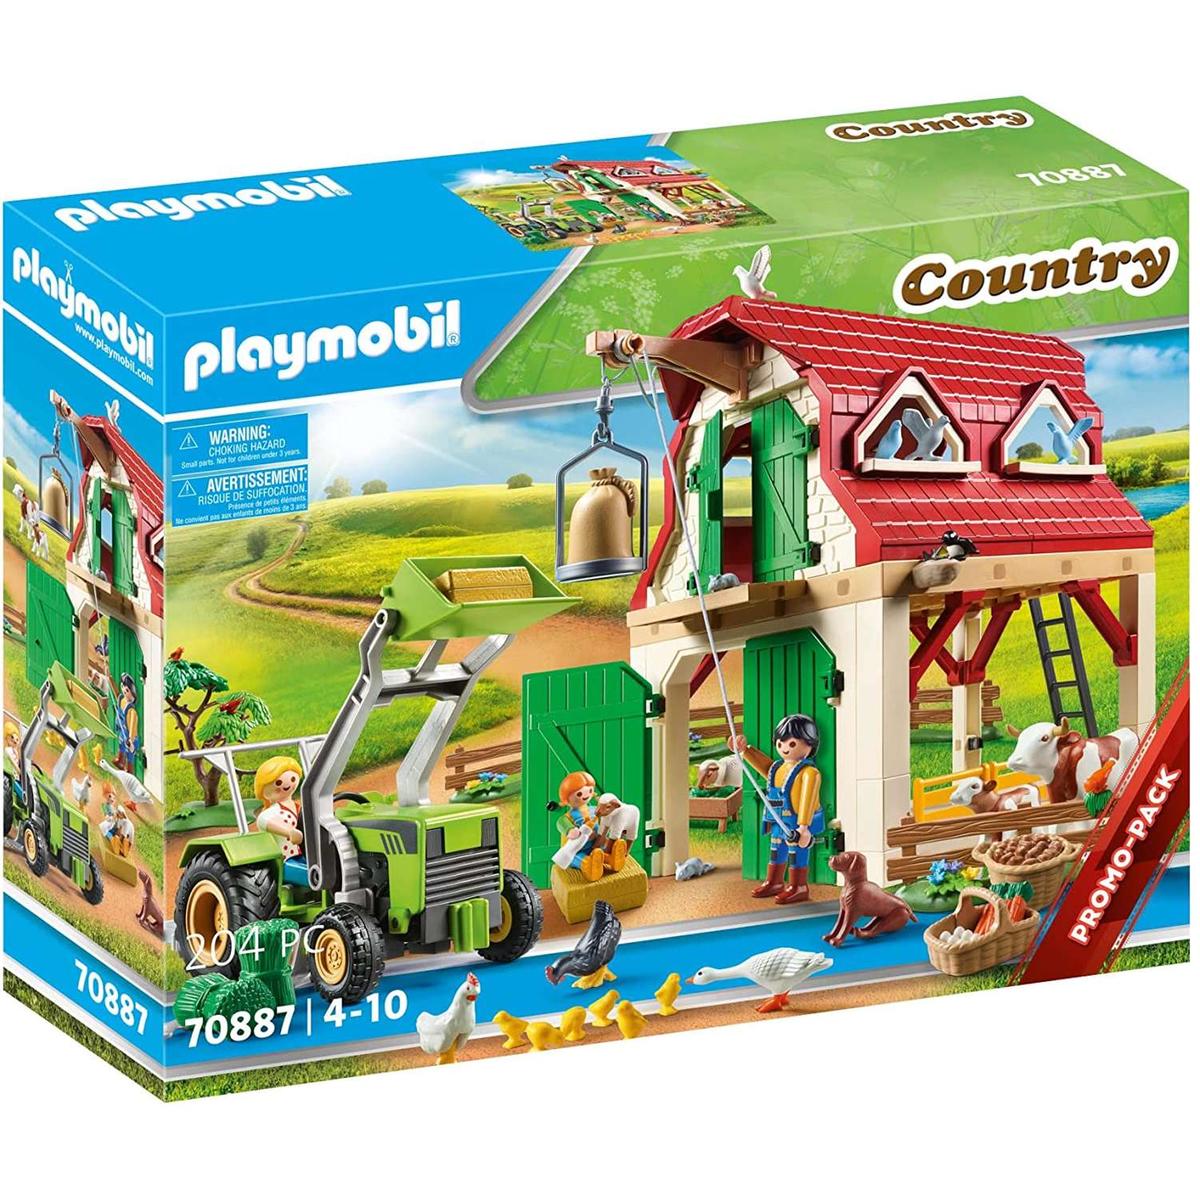 Playmobil - Fazenda com criação de animais pequenos 70887 | Playmobil |  Loja de brinquedos e videojogos Online Toysrus